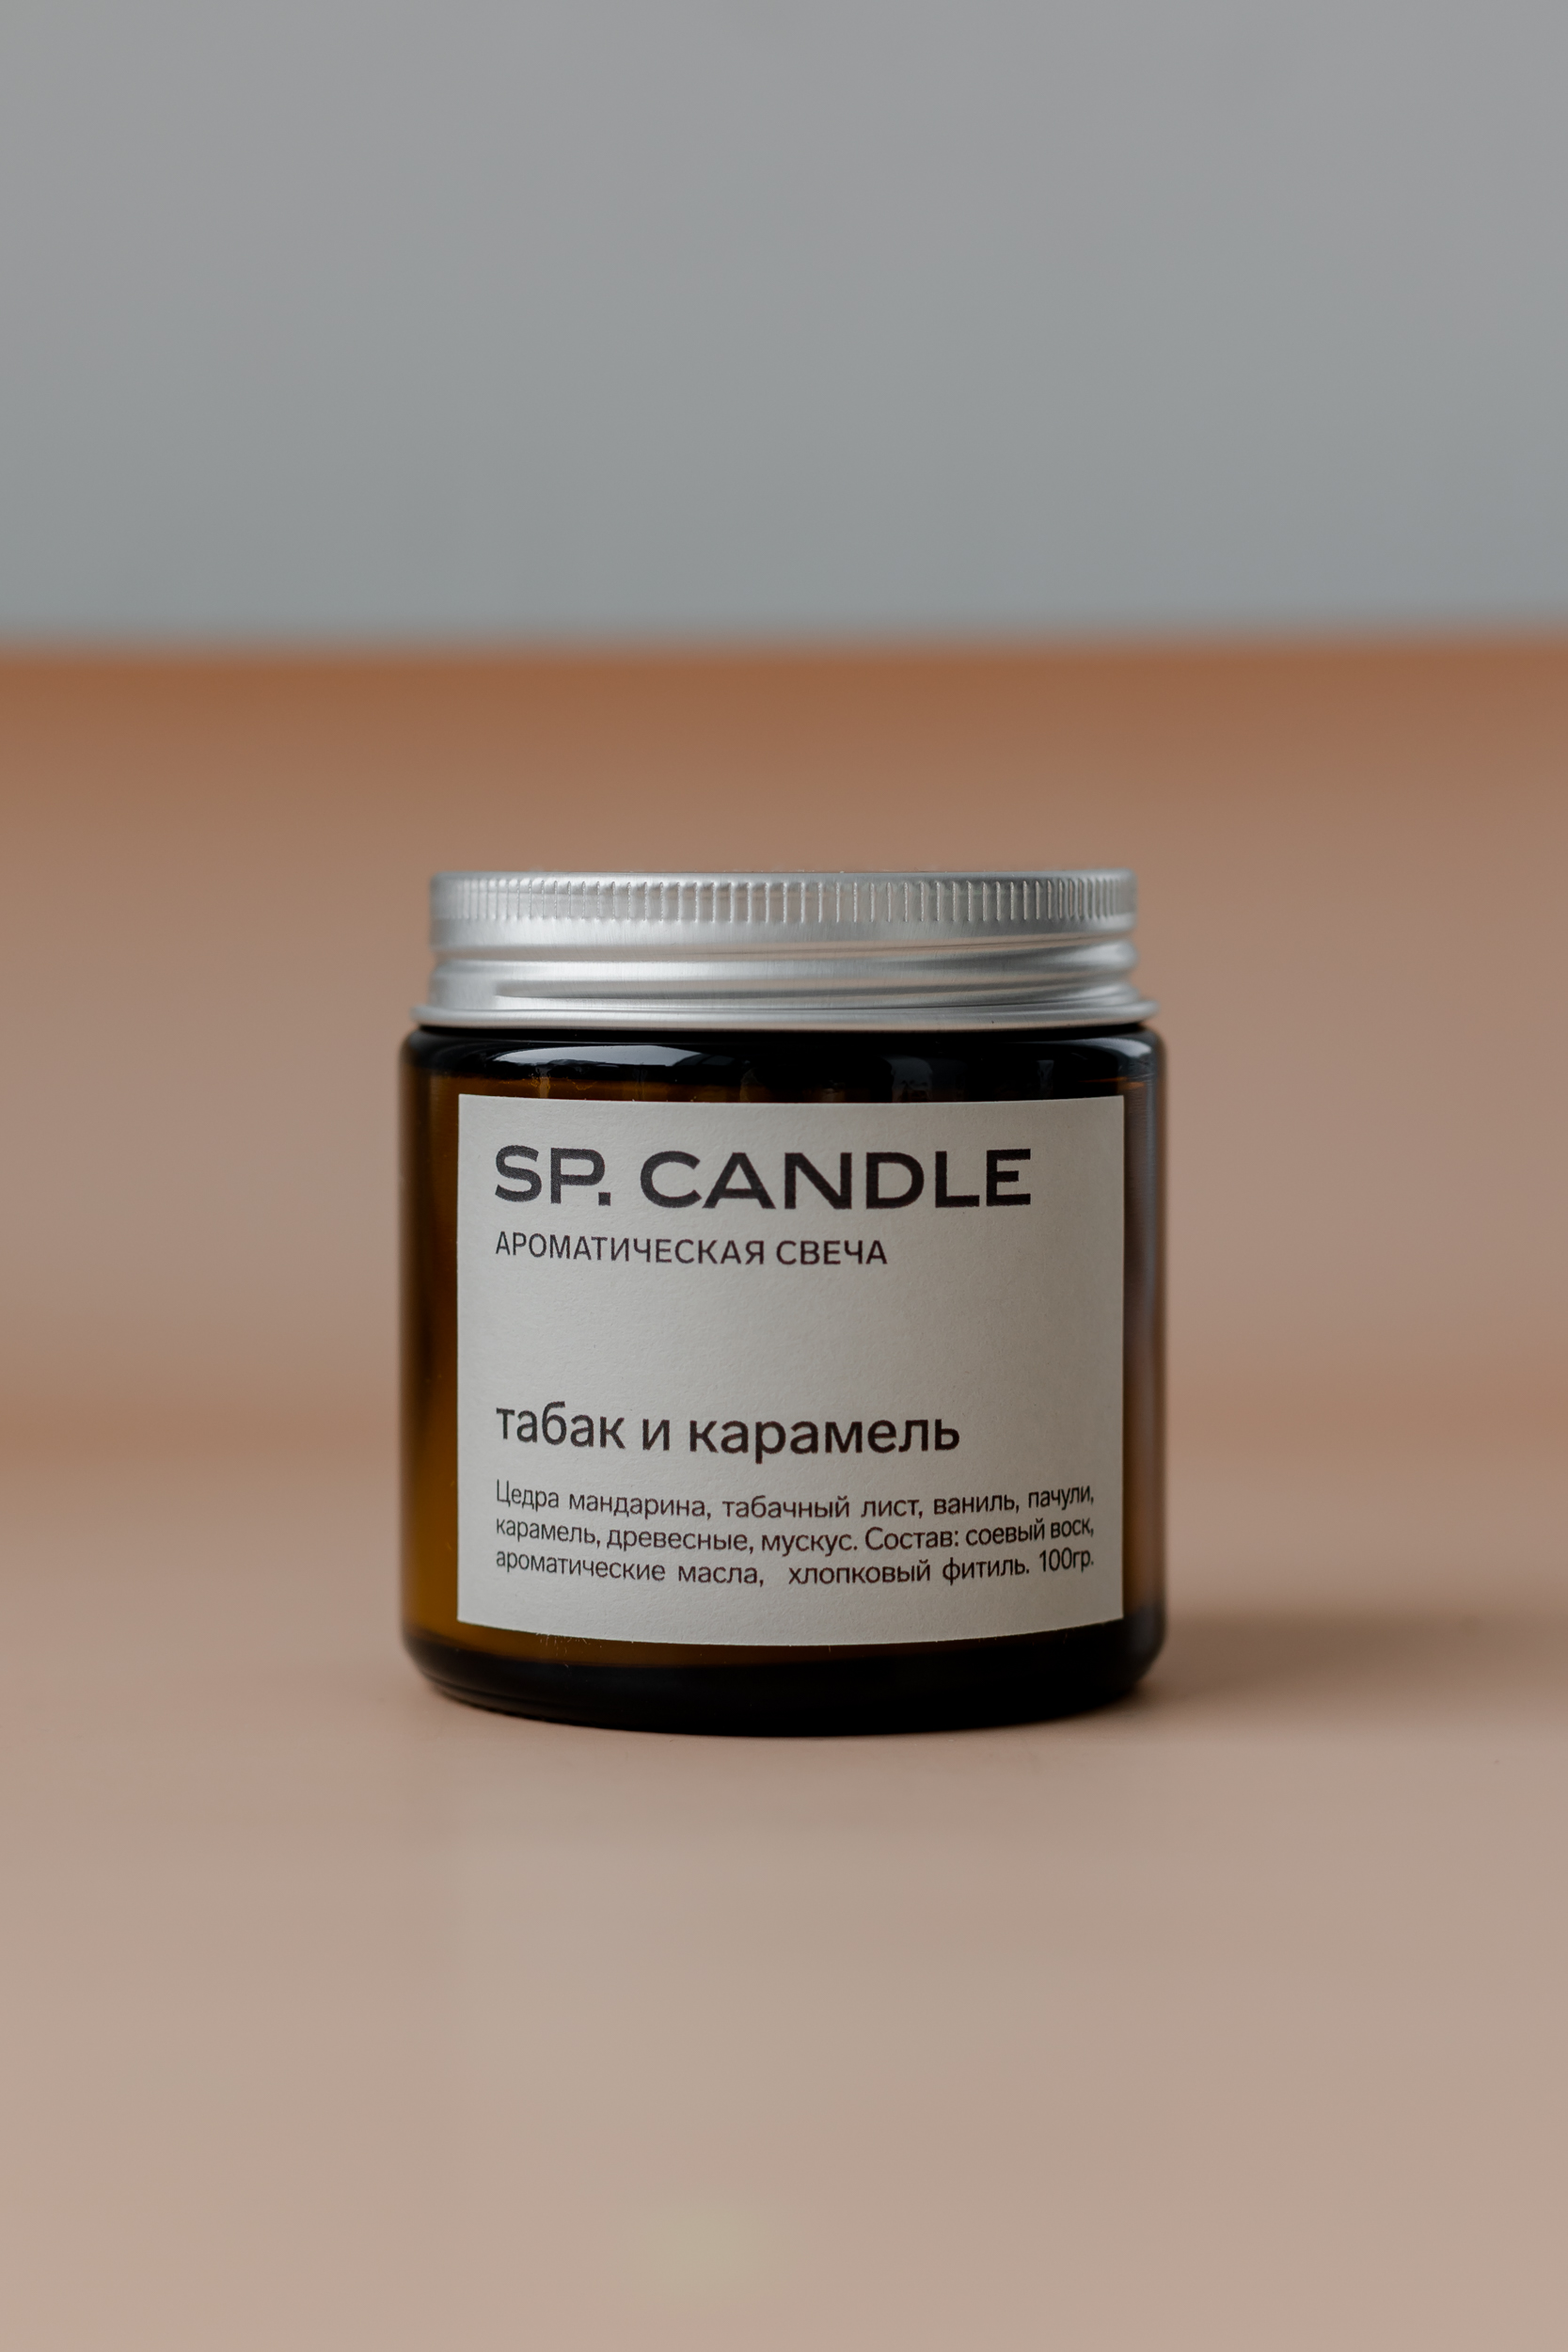 SP. CANDLE Ароматическая свеча Табак и карамель, 100г - фото 1